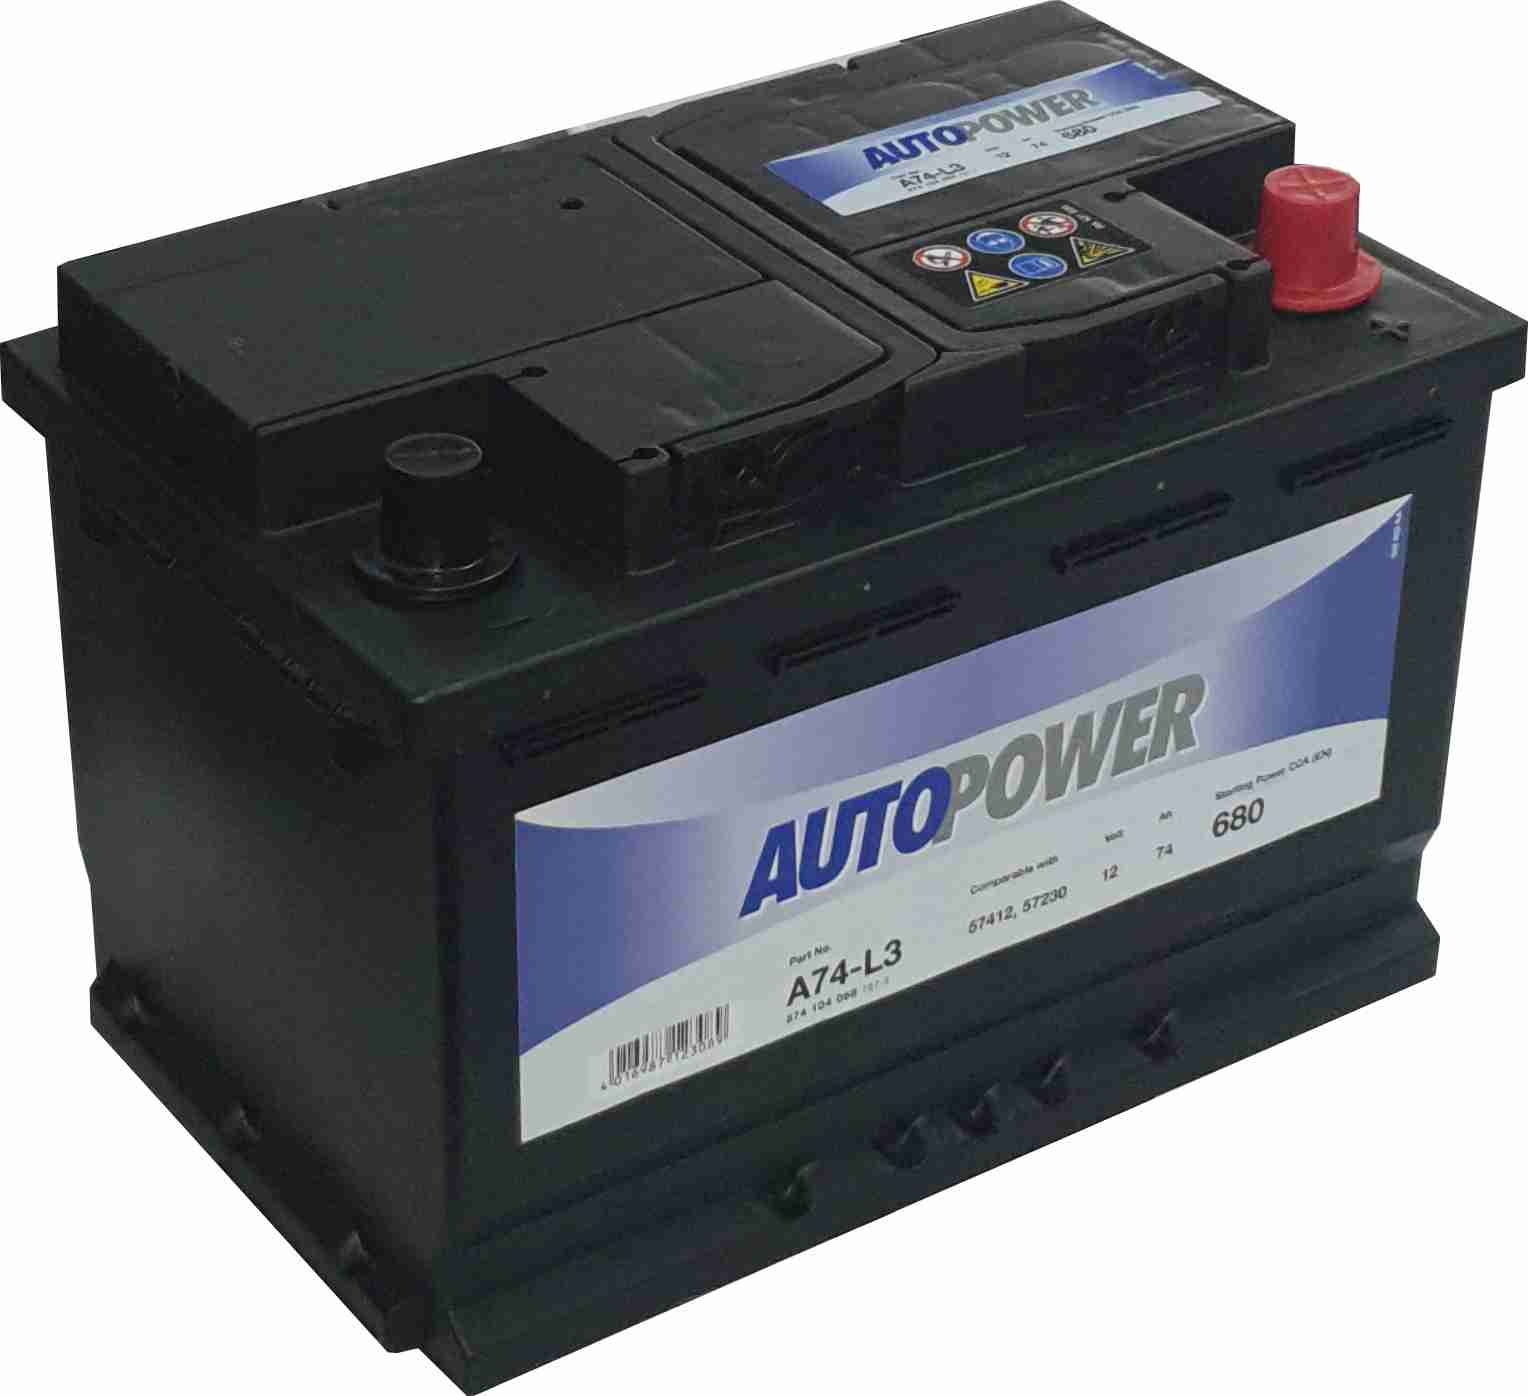 Auto Power A74-L3